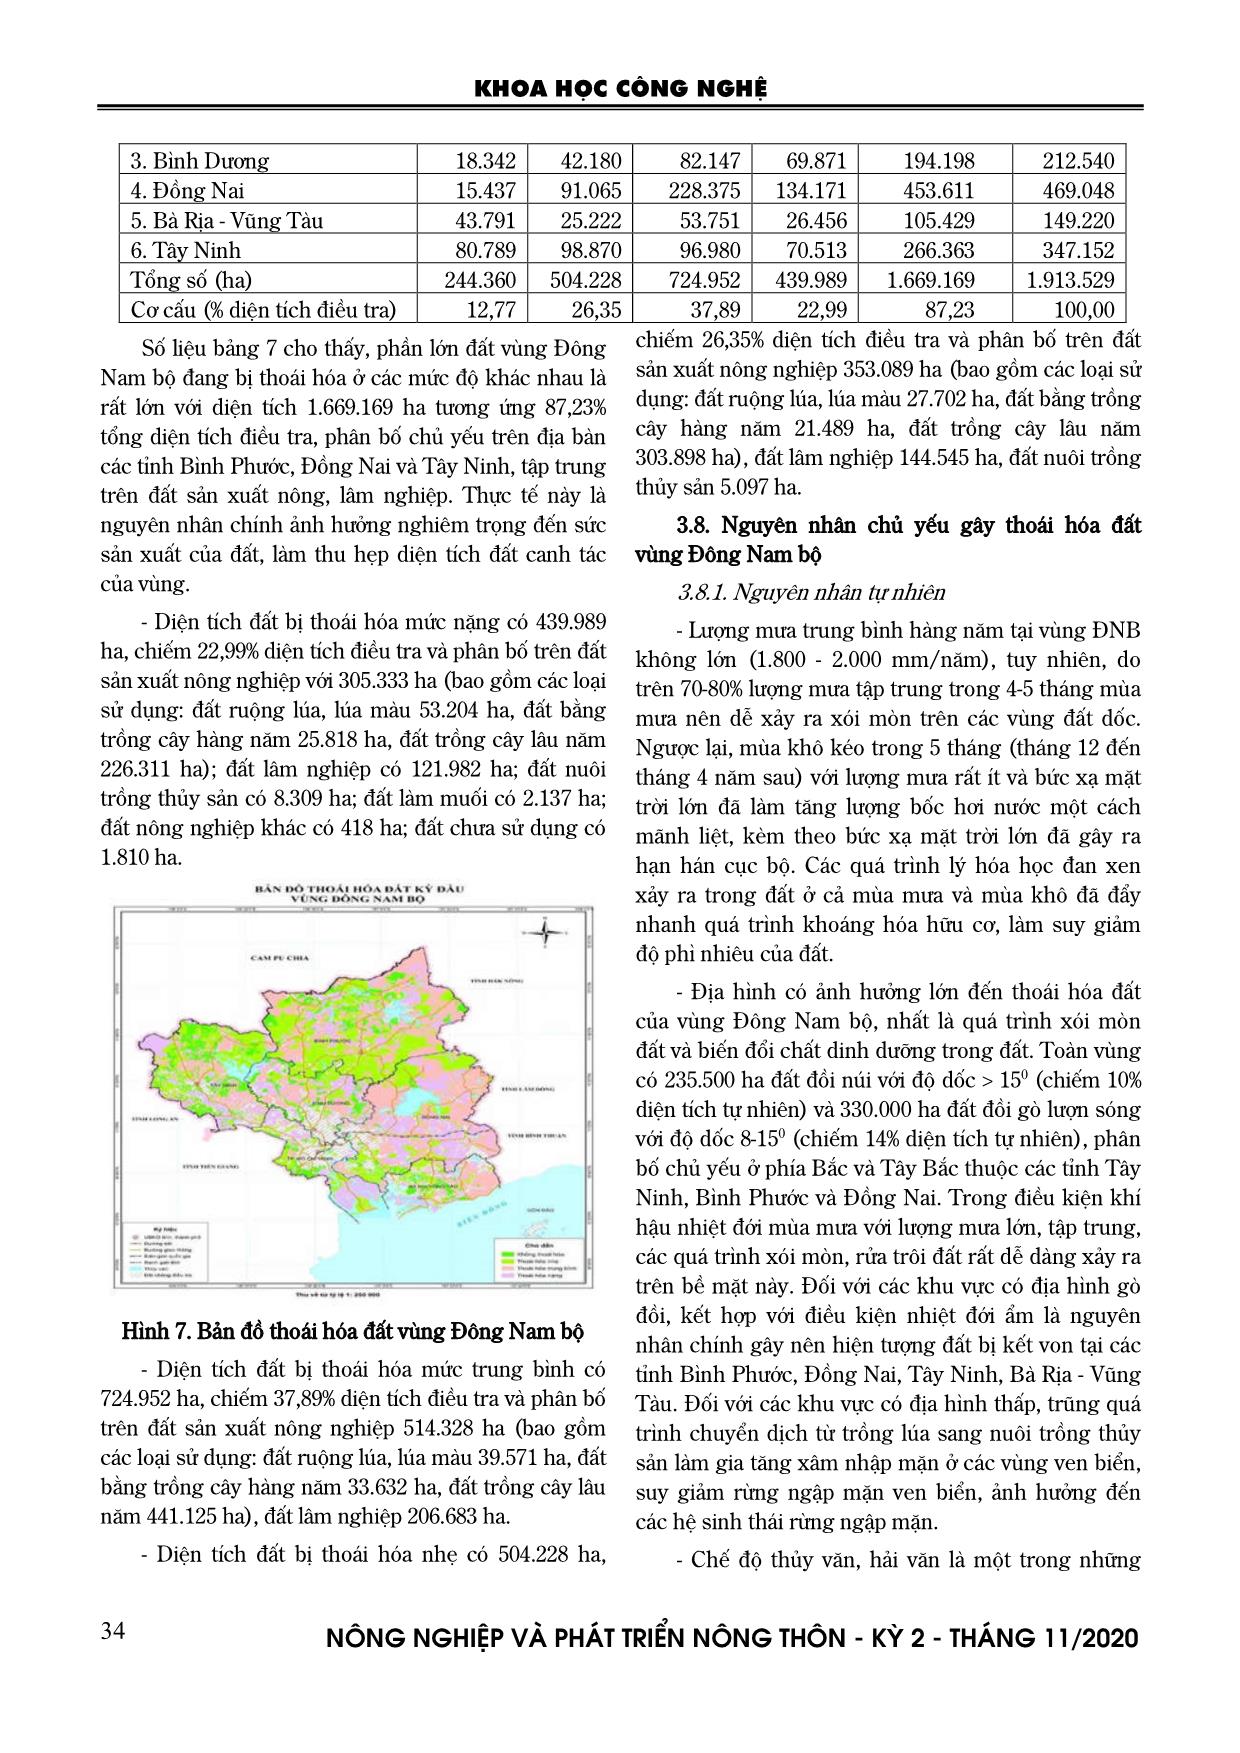 Thực trạng thoái hóa đất vùng Đông Nam Bộ trang 8